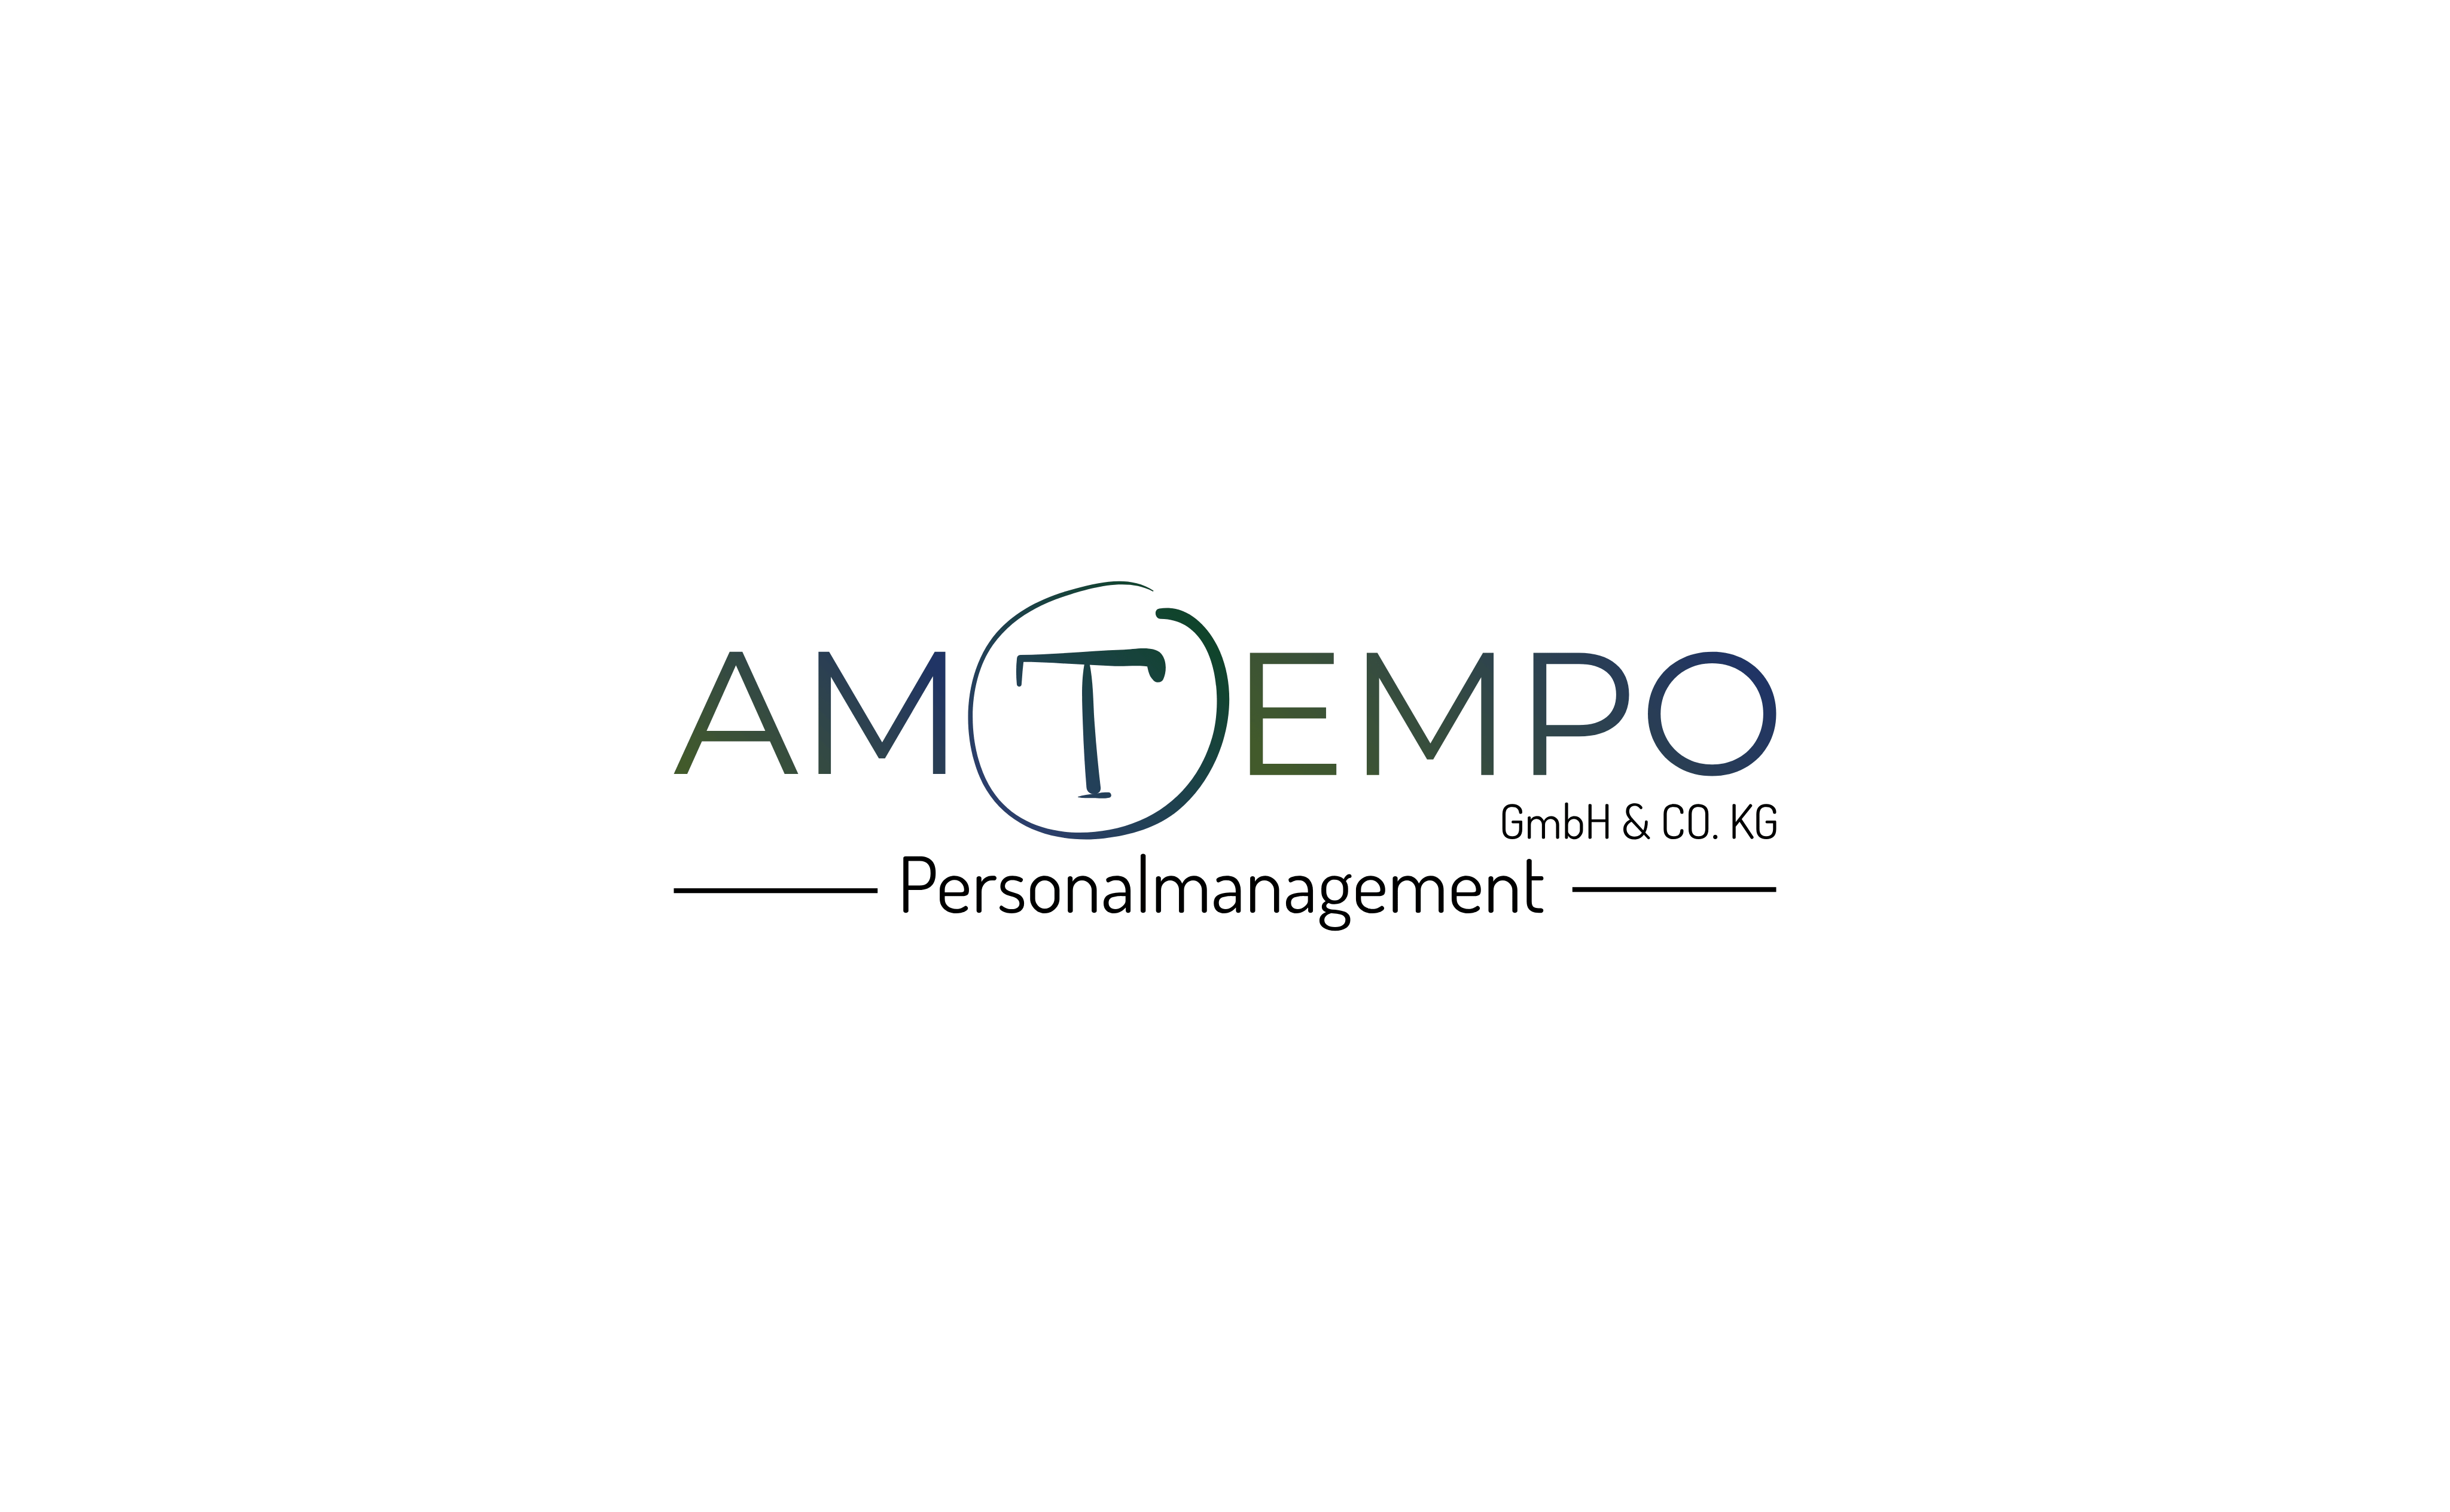 Amtempo Personalmanagement Gmb H & Co.KG Logo